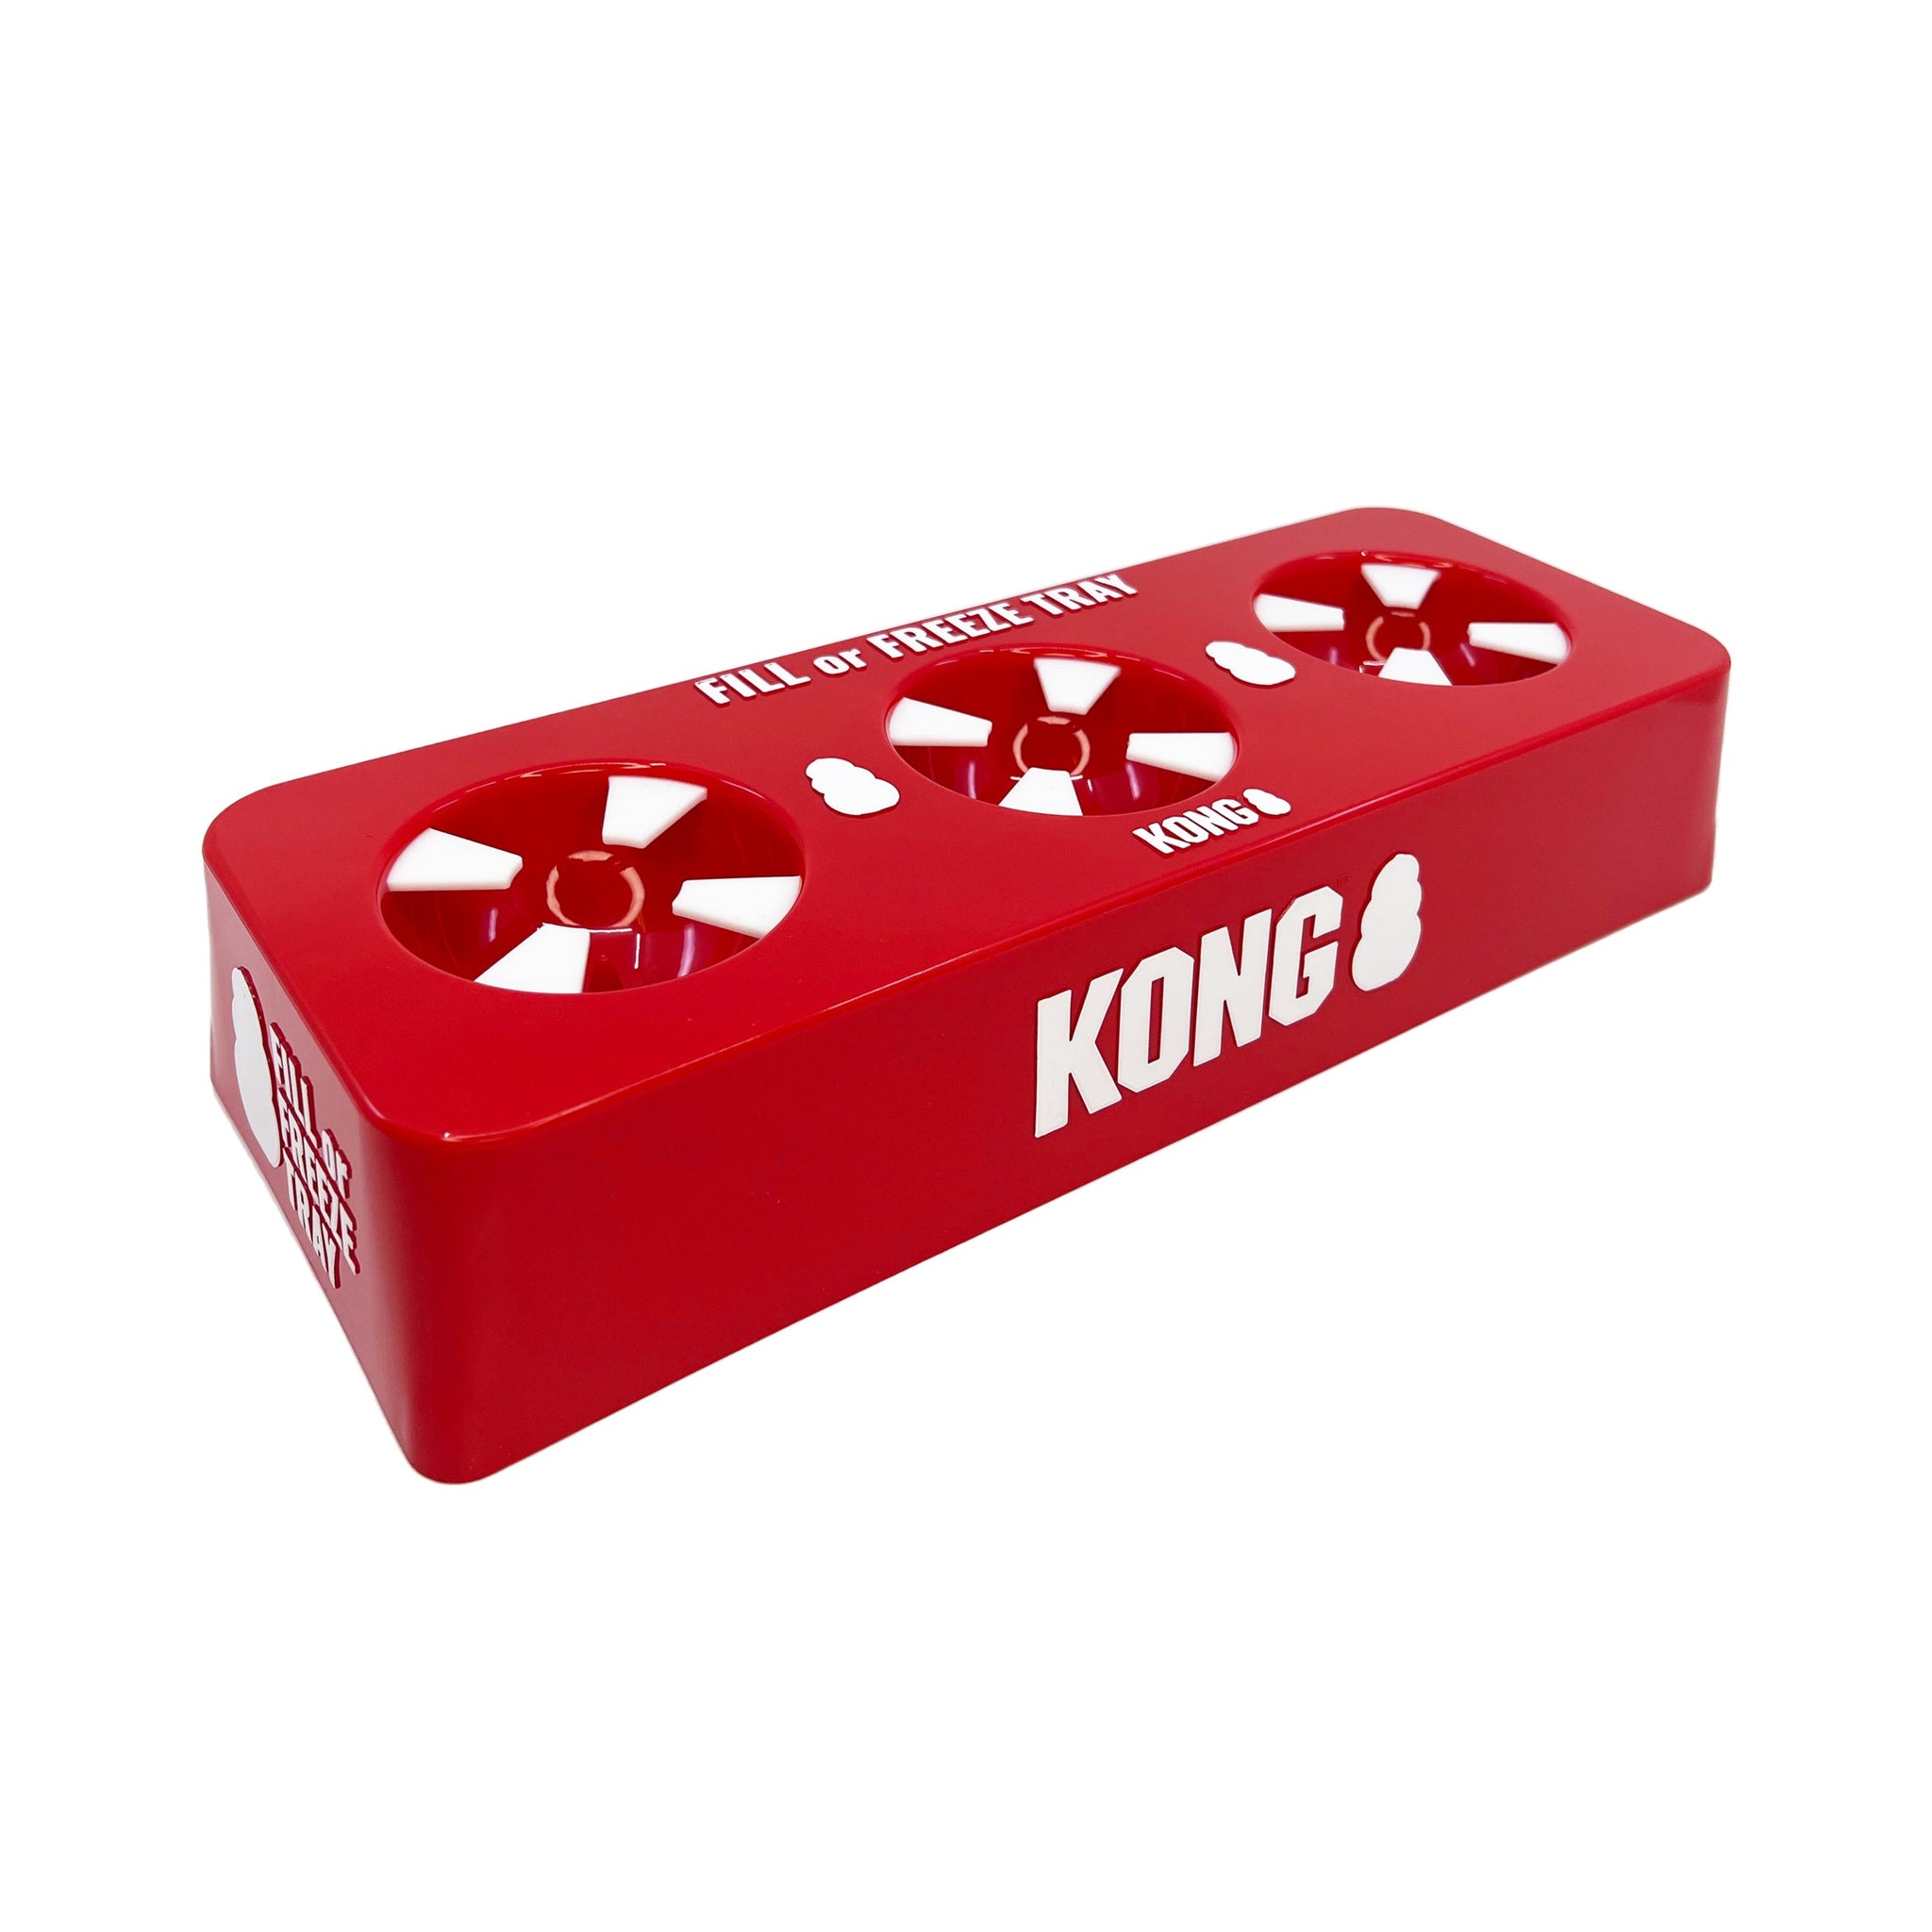 Kong Dog Toy Freezer Tray (Large Kong) by povsky